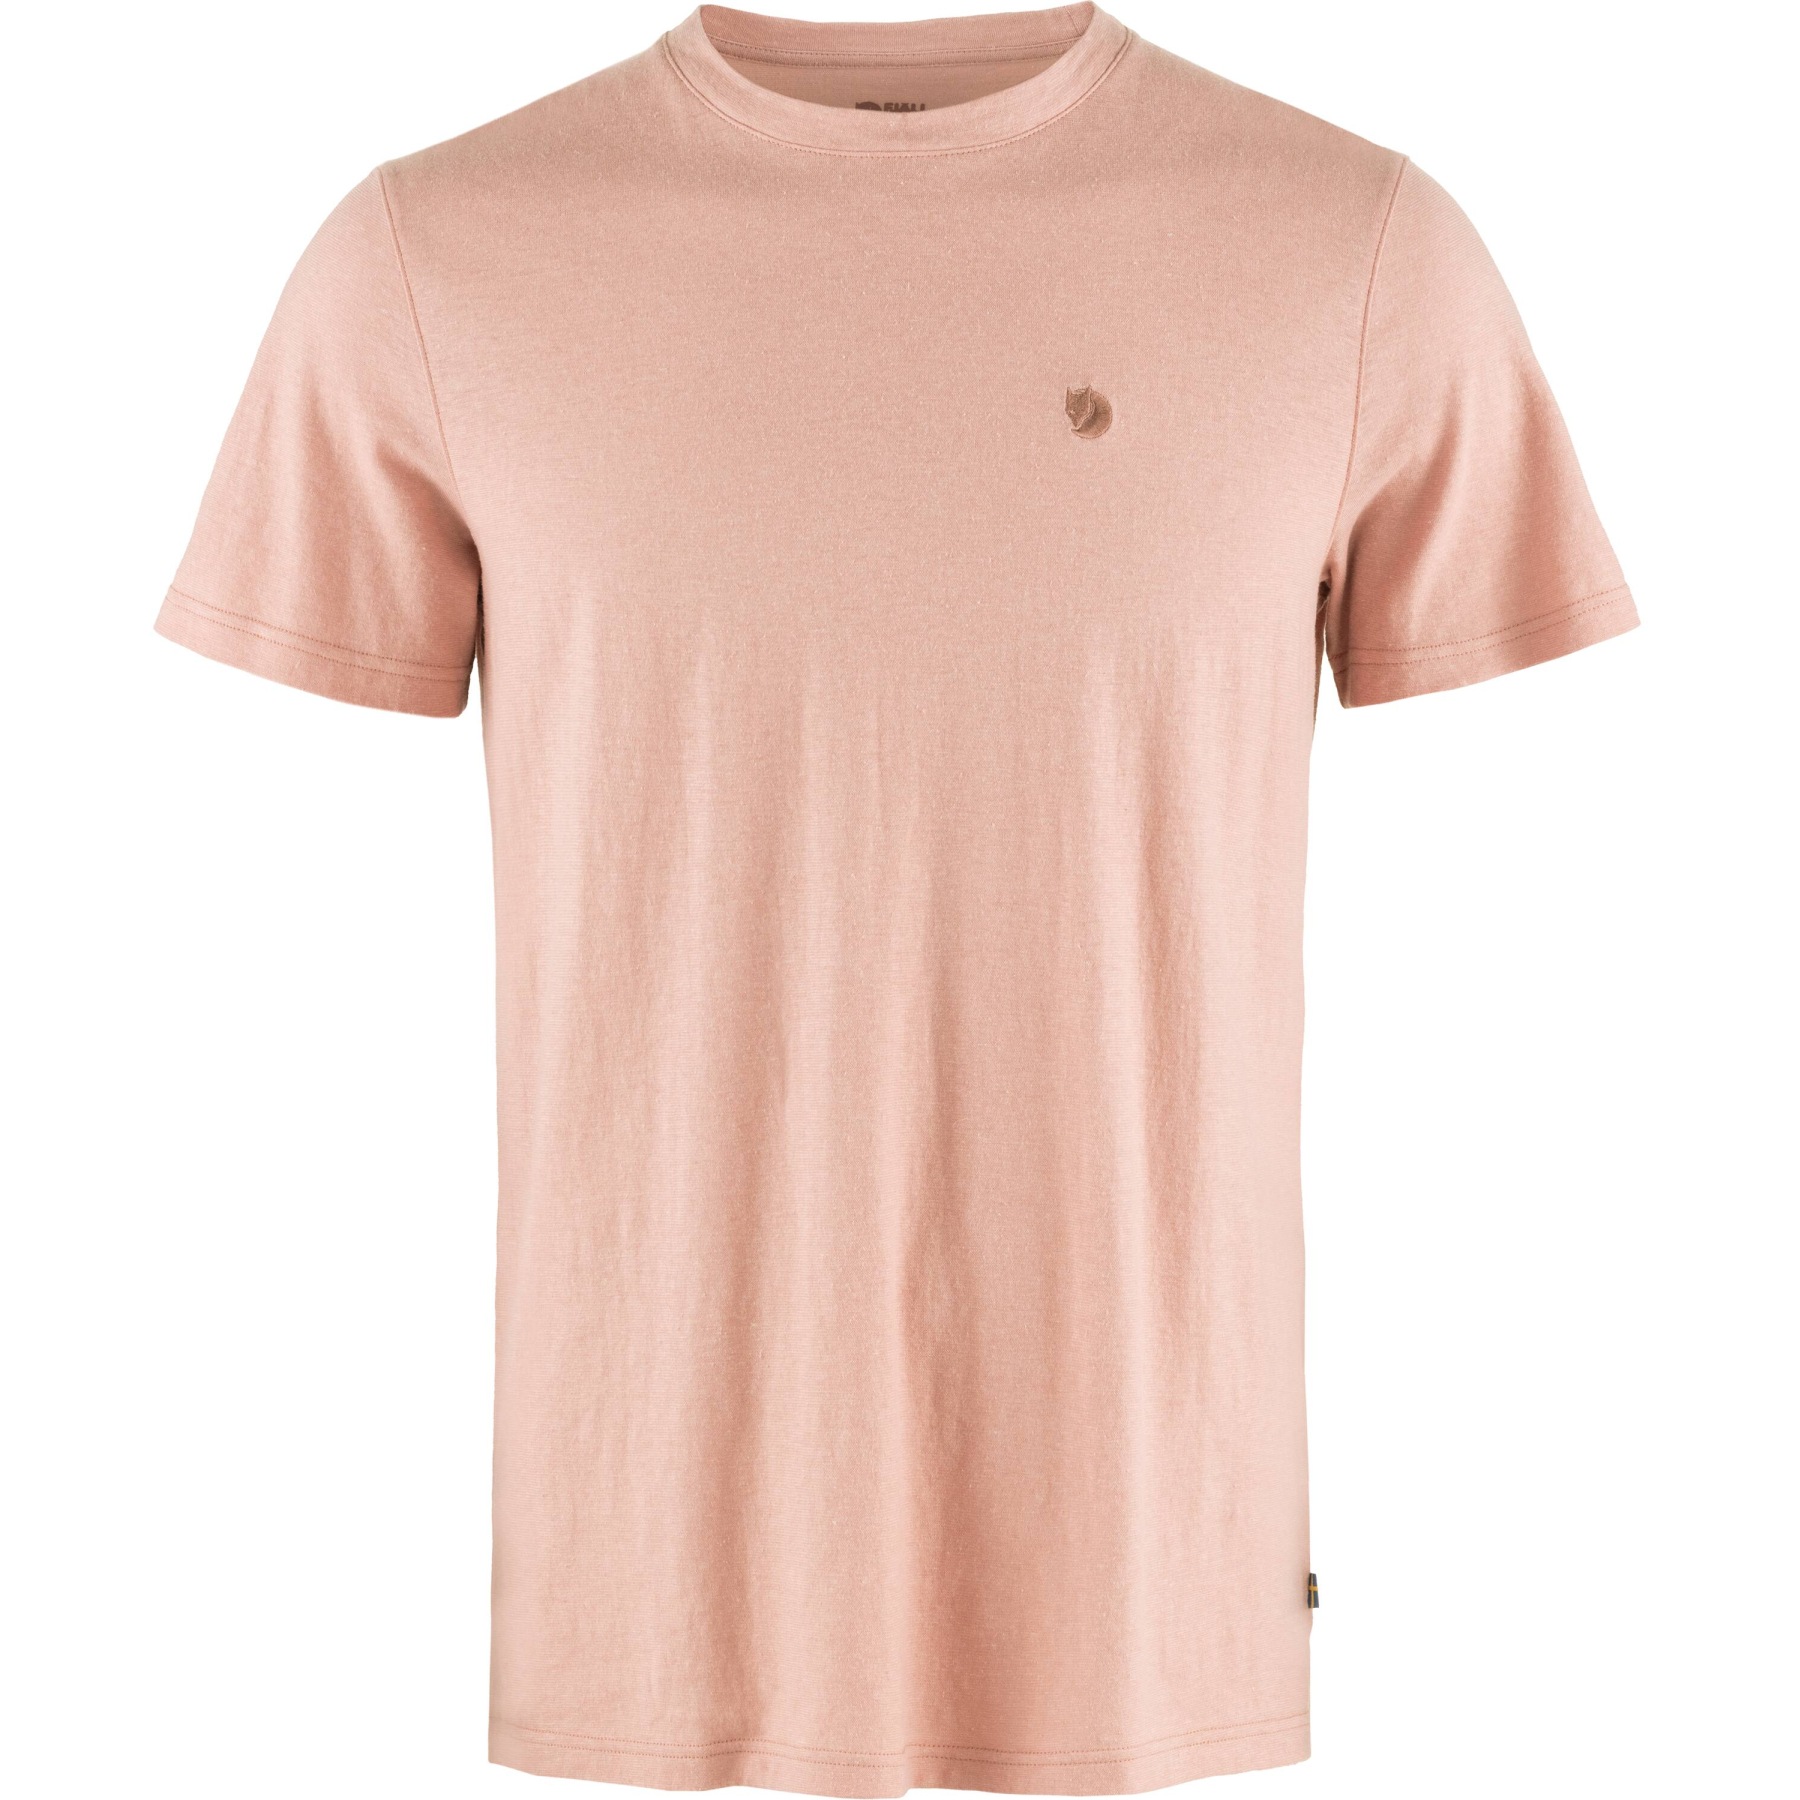 Produktbild von Fjällräven Hemp Blend T-Shirt Herren - chalk rose